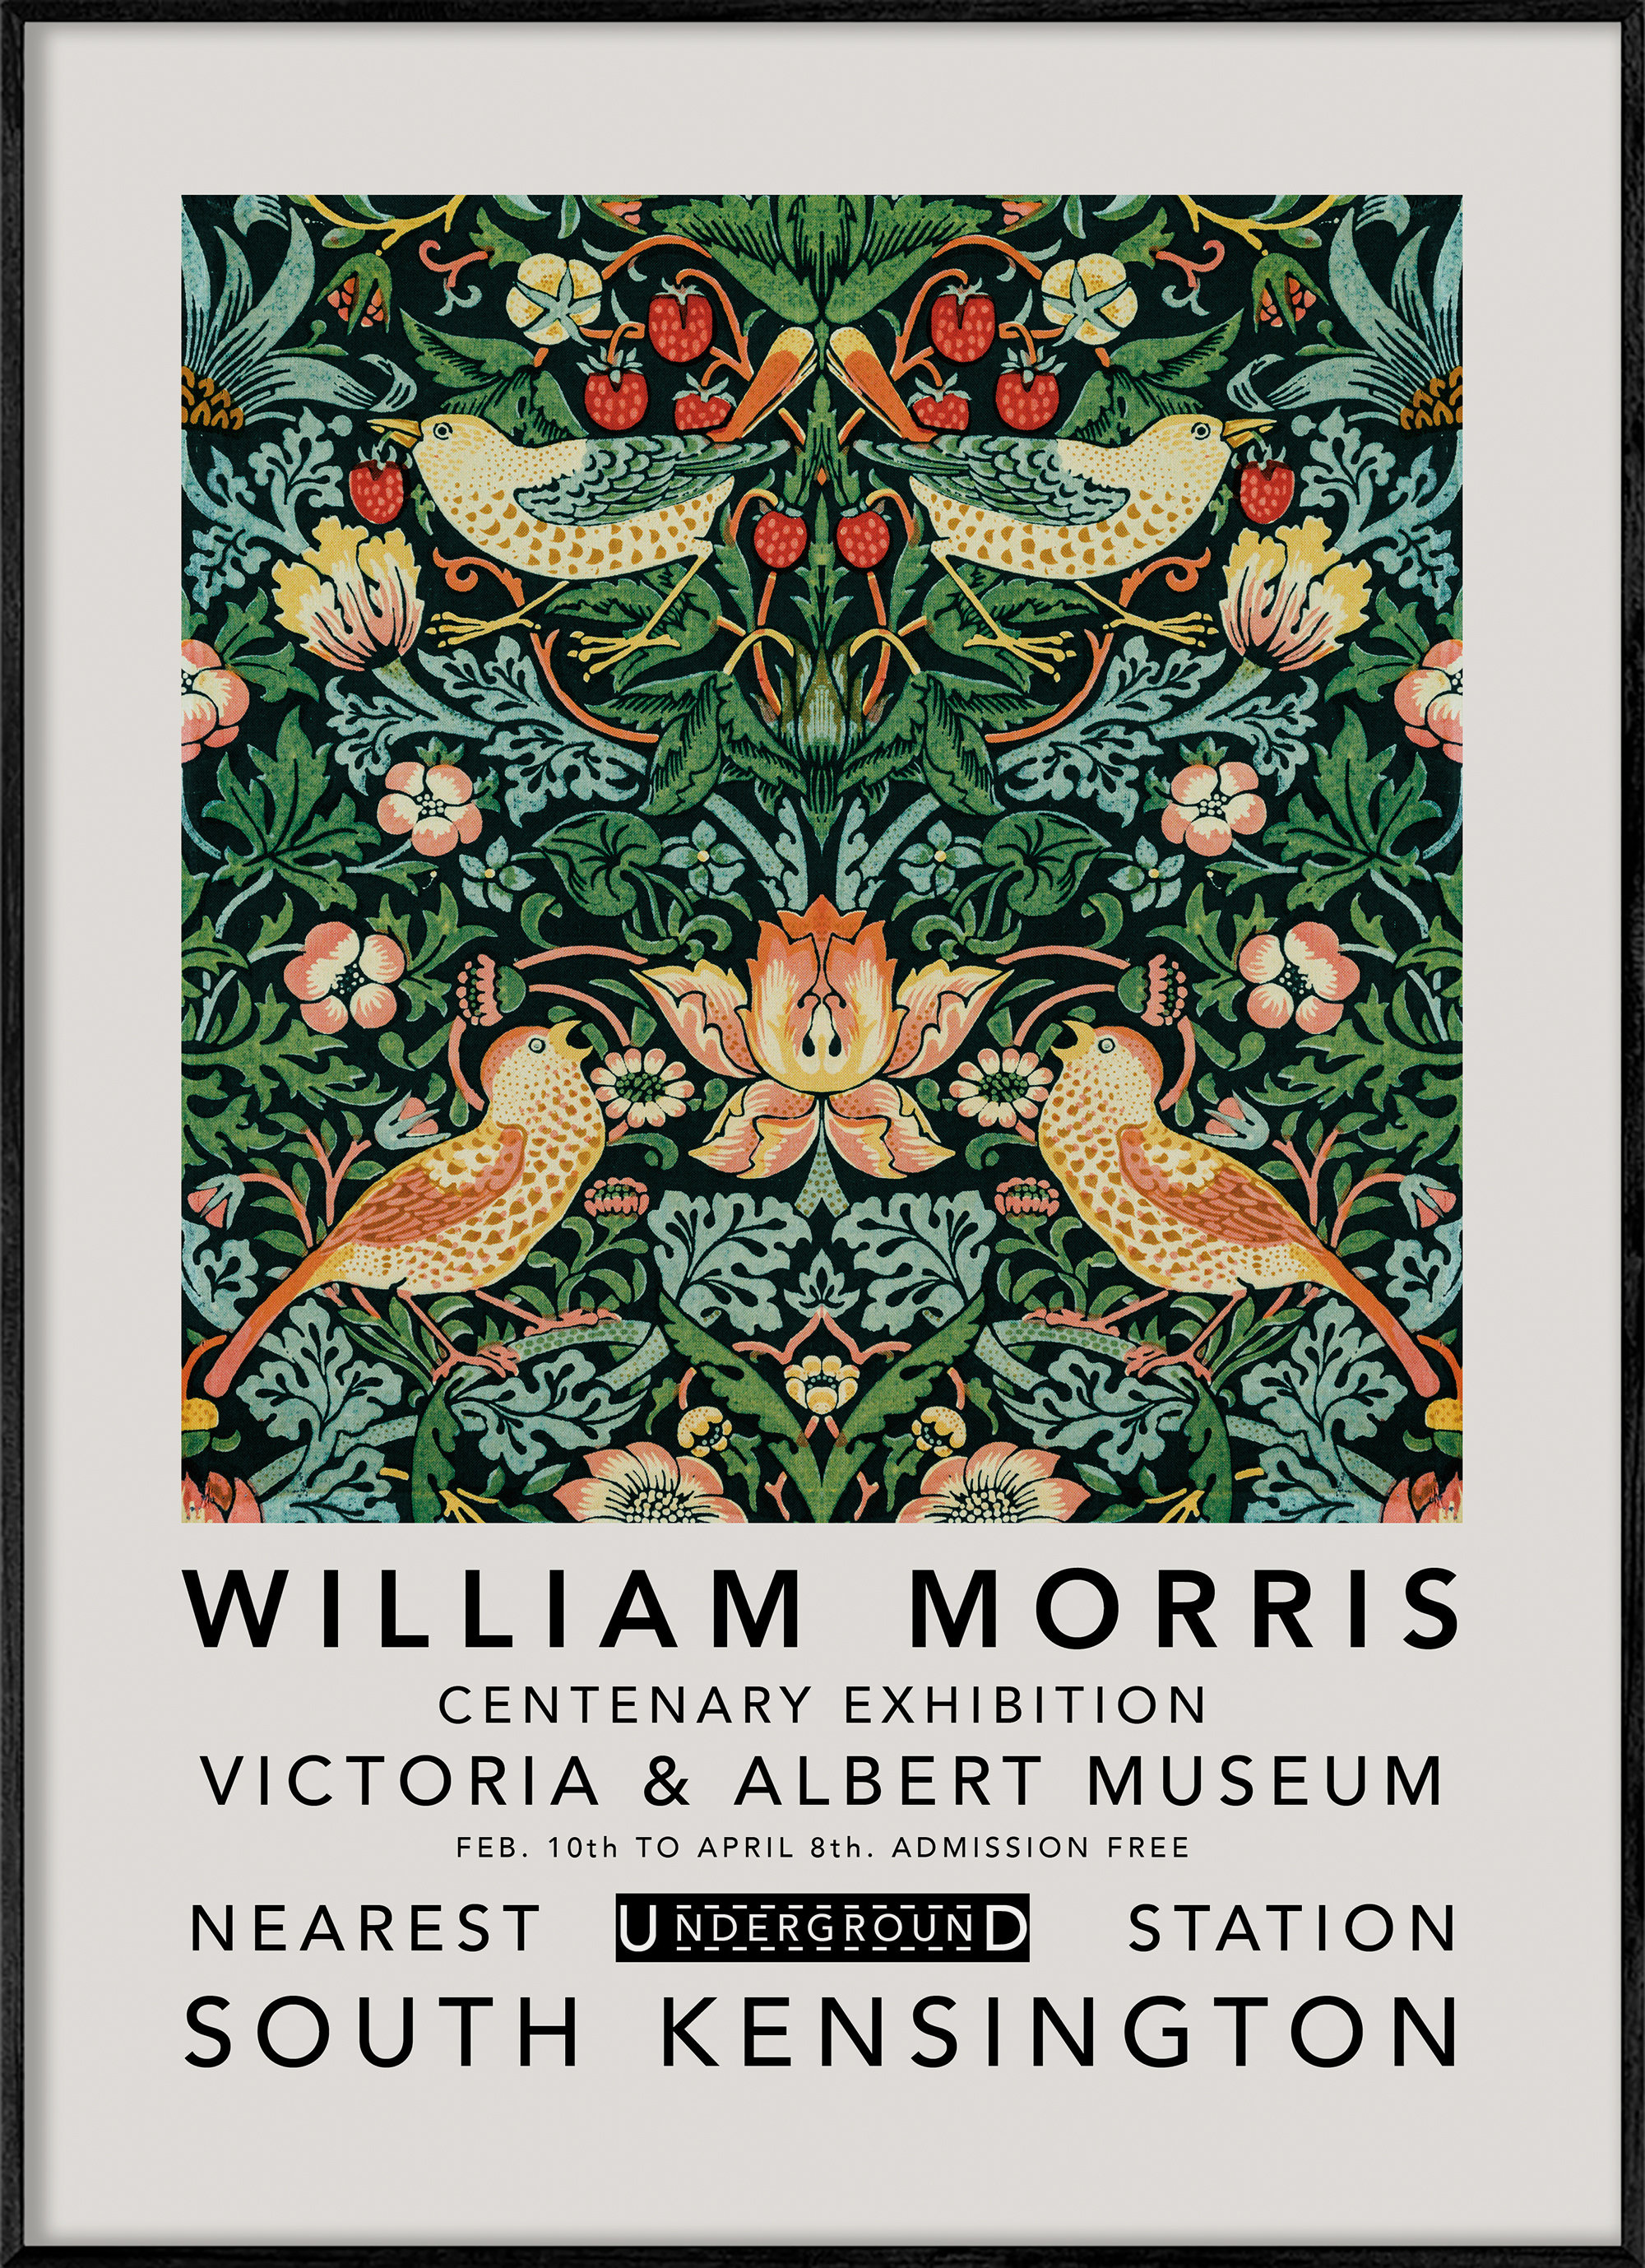 D'eau amovible-activé Papier Peint Vintage Floral Oiseau Art William Morris 